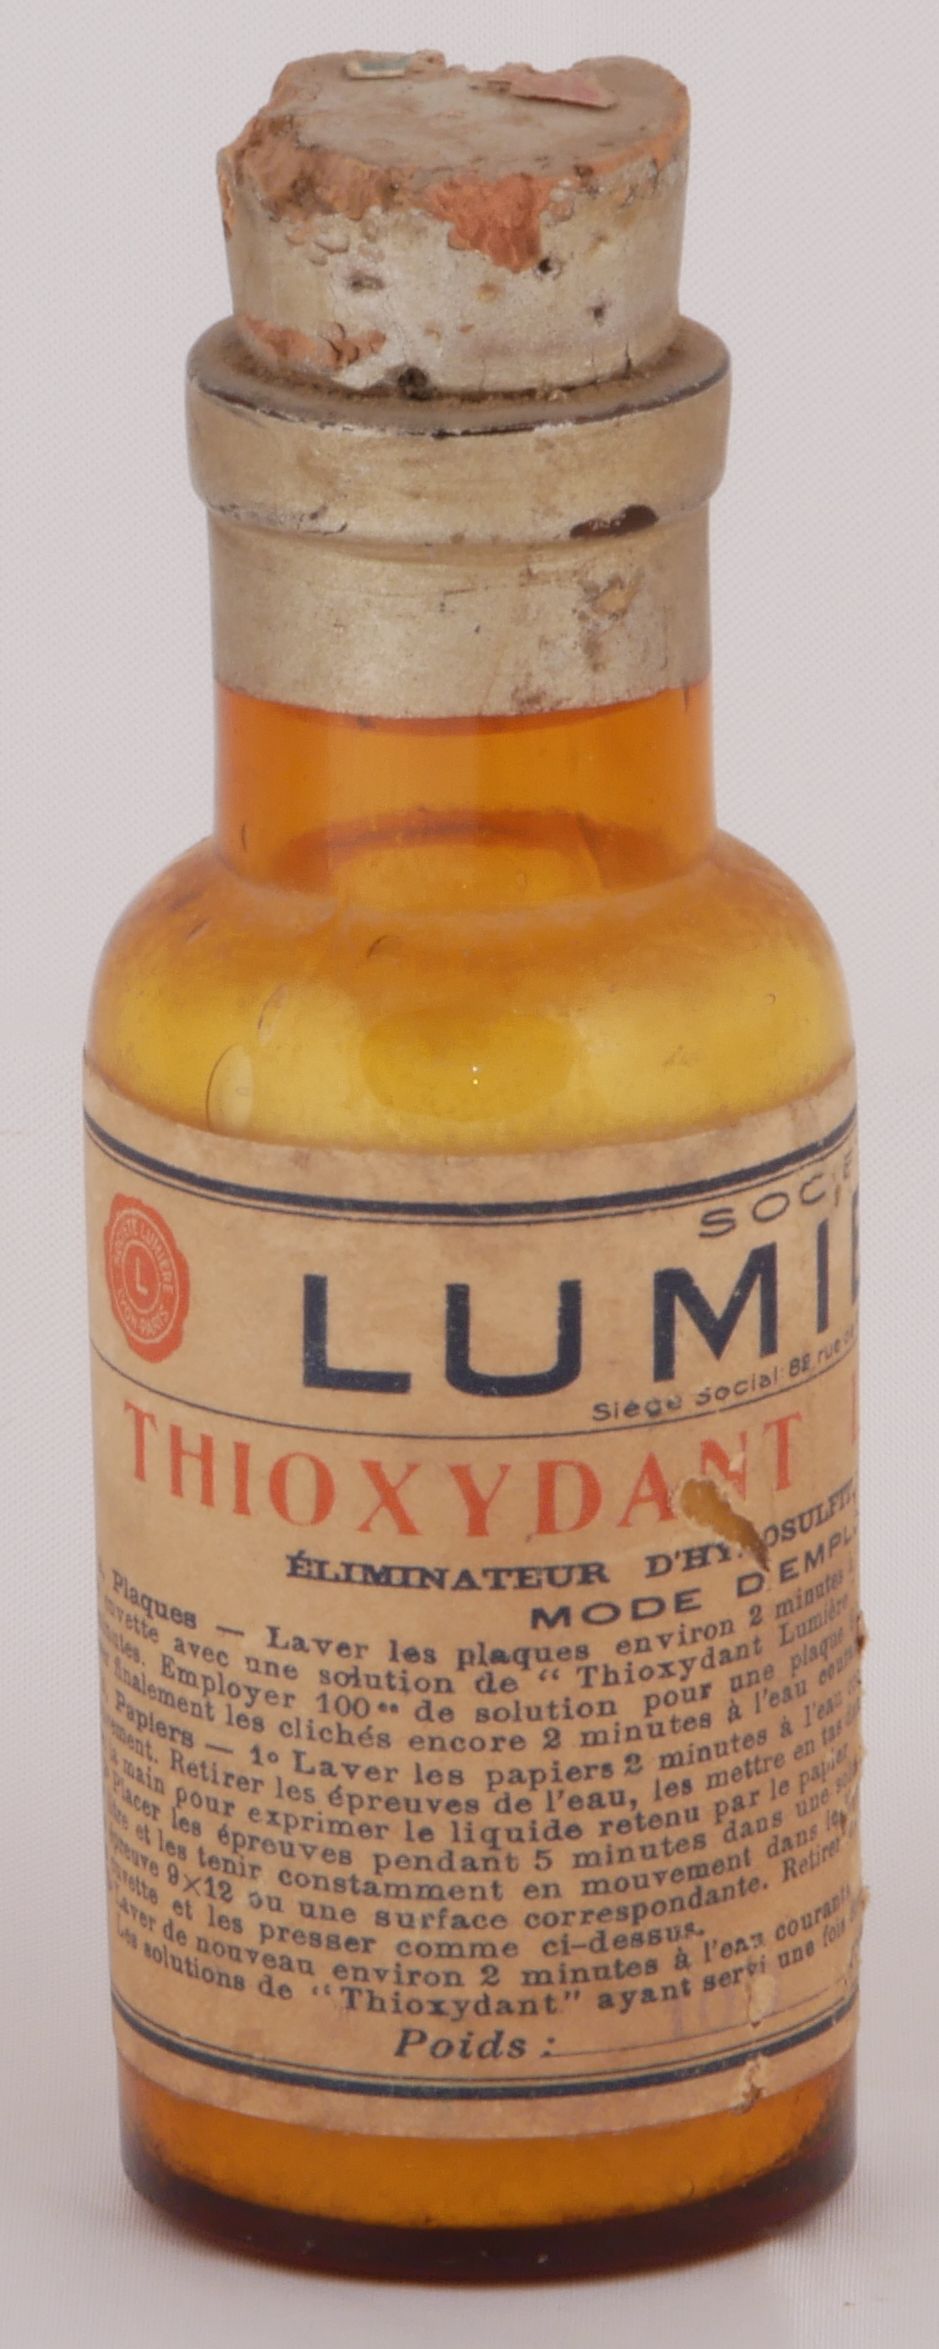 Thioxydant - 100 g